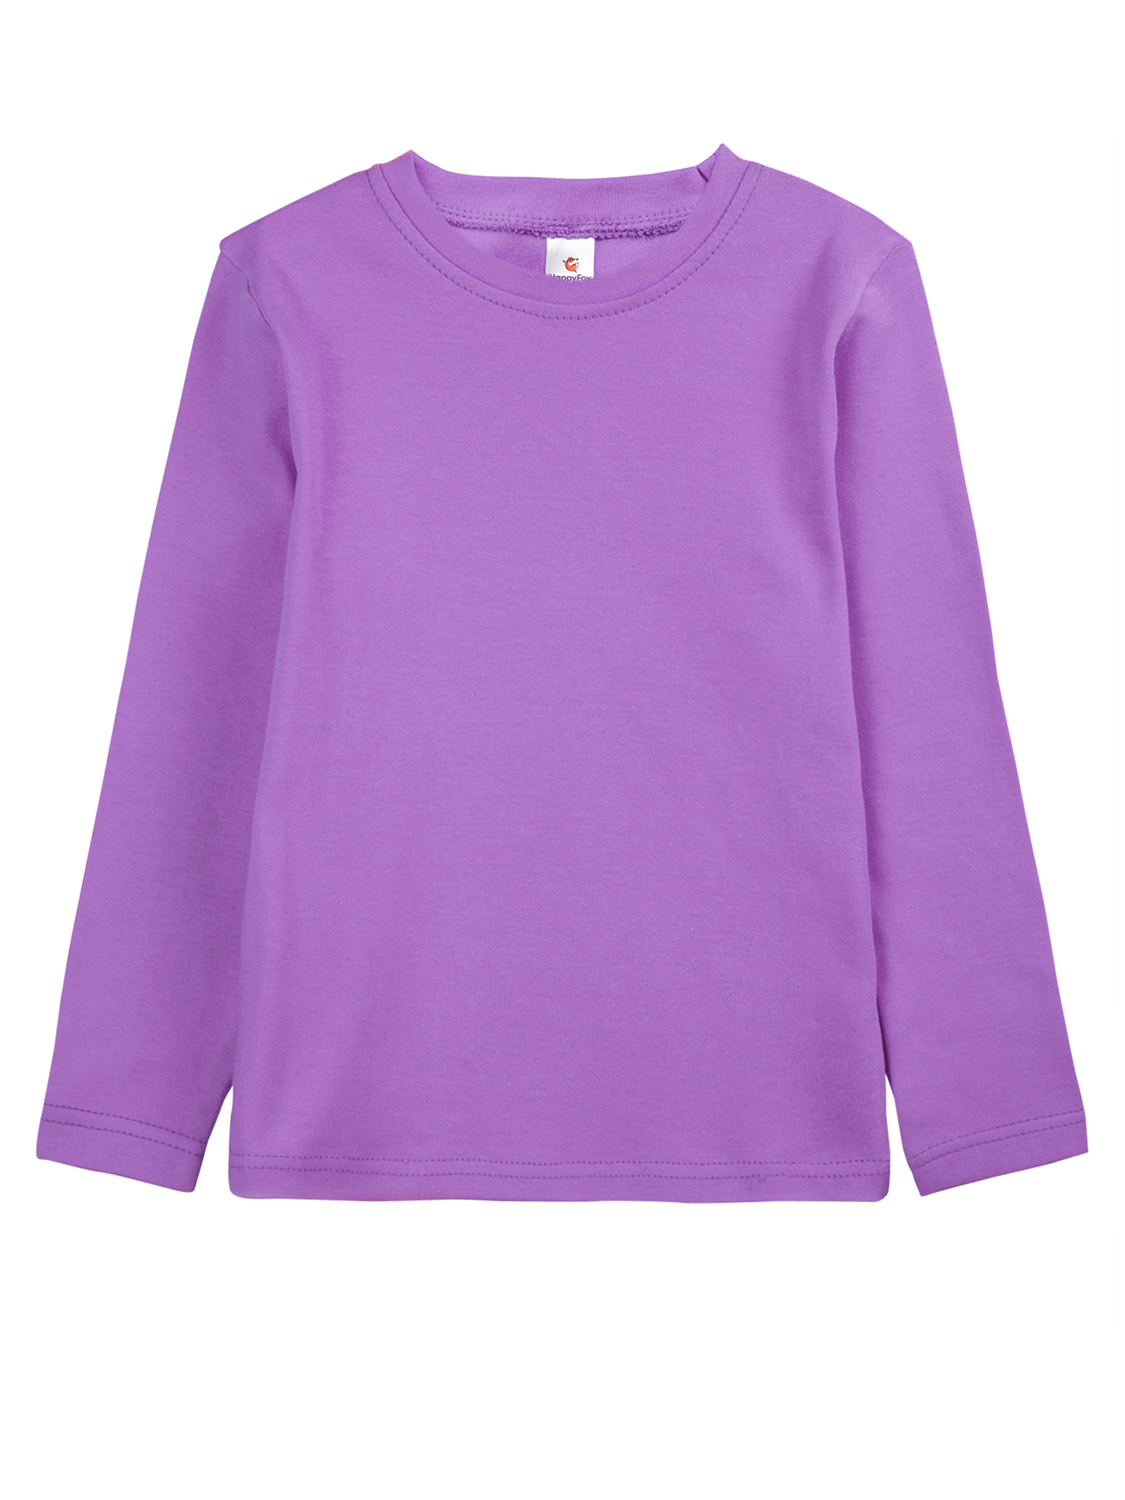 Джемпер детский HappyFox 5502 цв. фиолетовый р. 104 костюм трикотажный платонида фиолетовый от